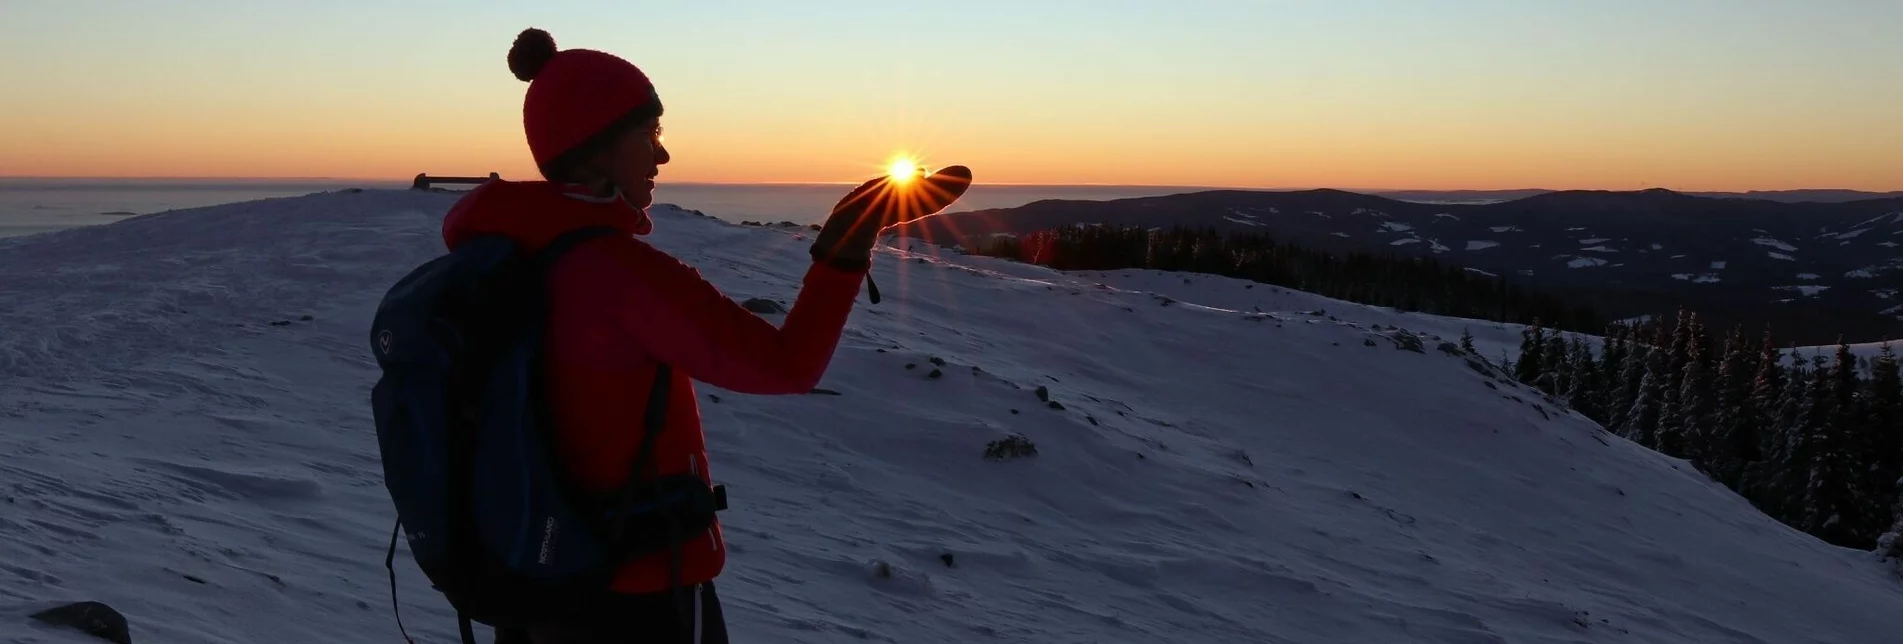 Winterwandern Winterwanderung zum Sonnenaufgang am Gaberl - Touren-Impression #1 | © Erlebnisregion Murtal